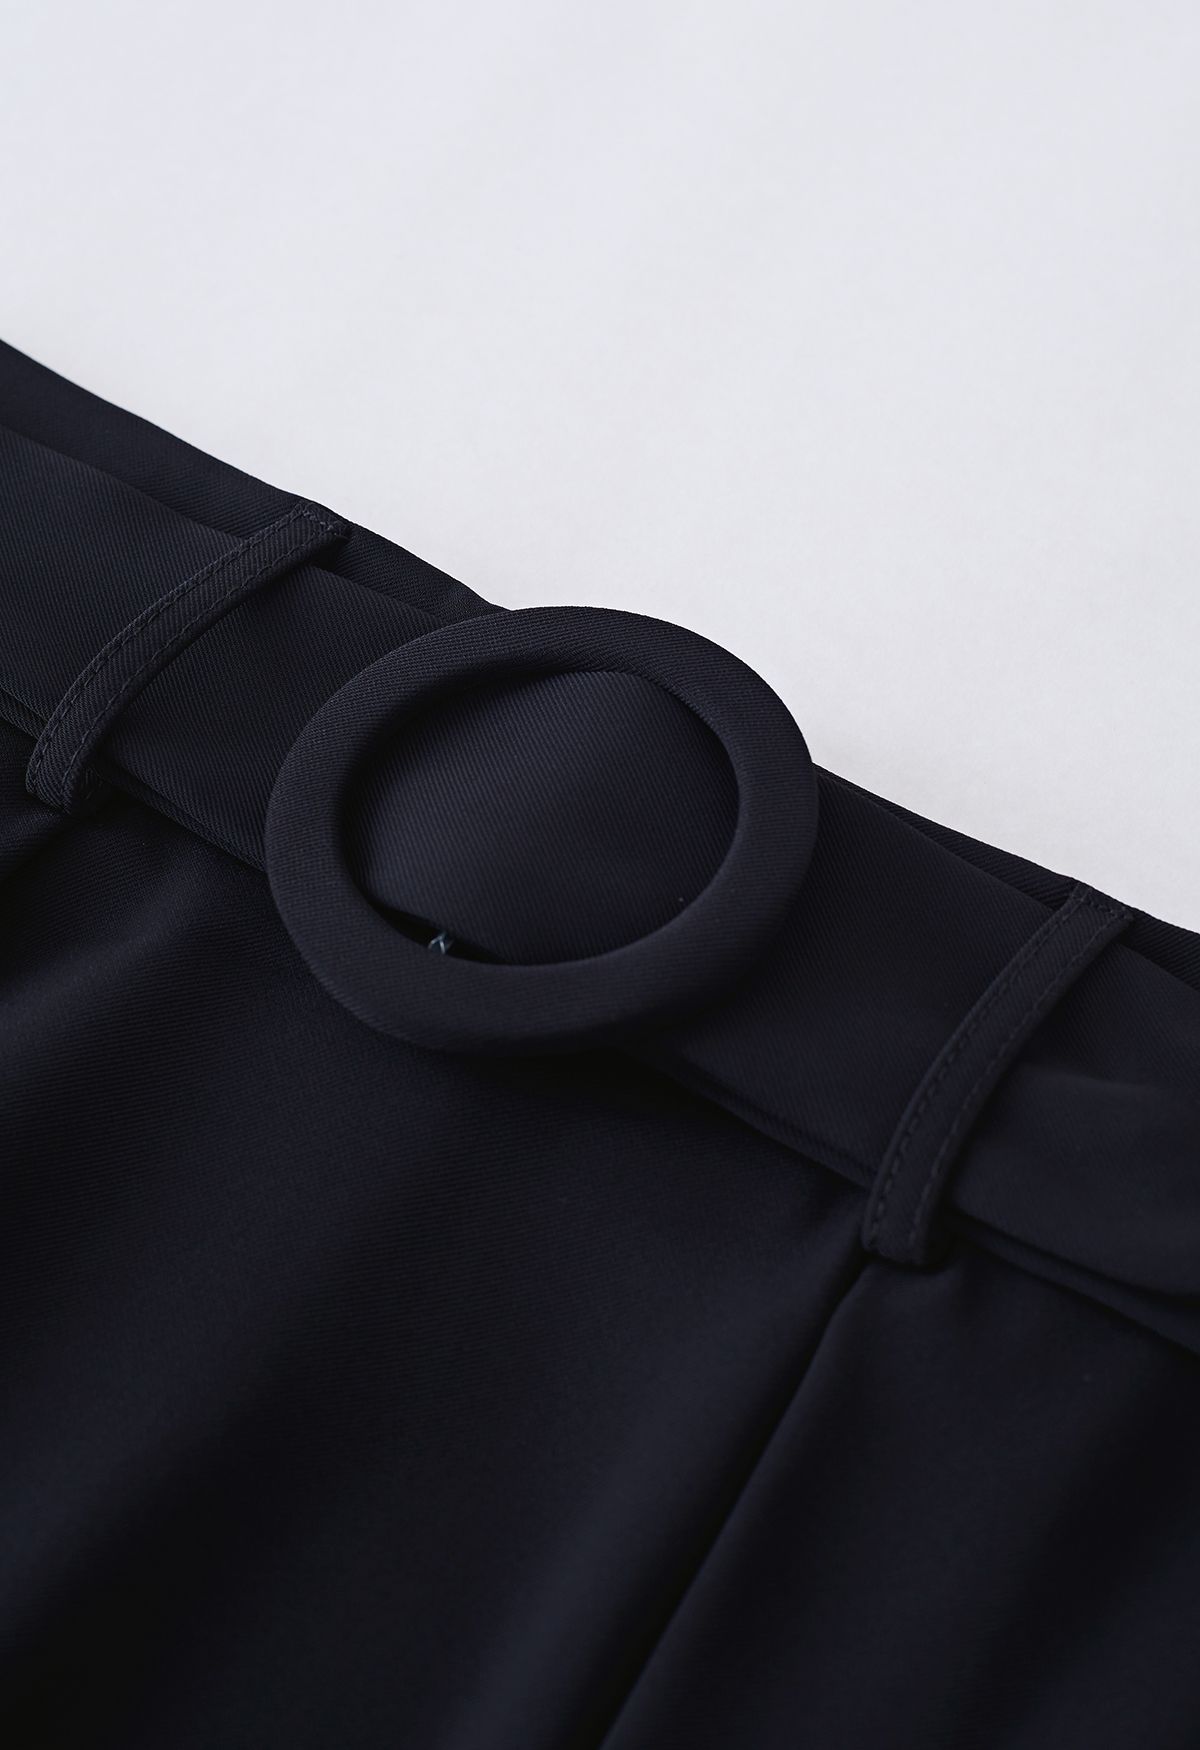 Falda midi acampanada plisada con cinturón O-Ring en negro